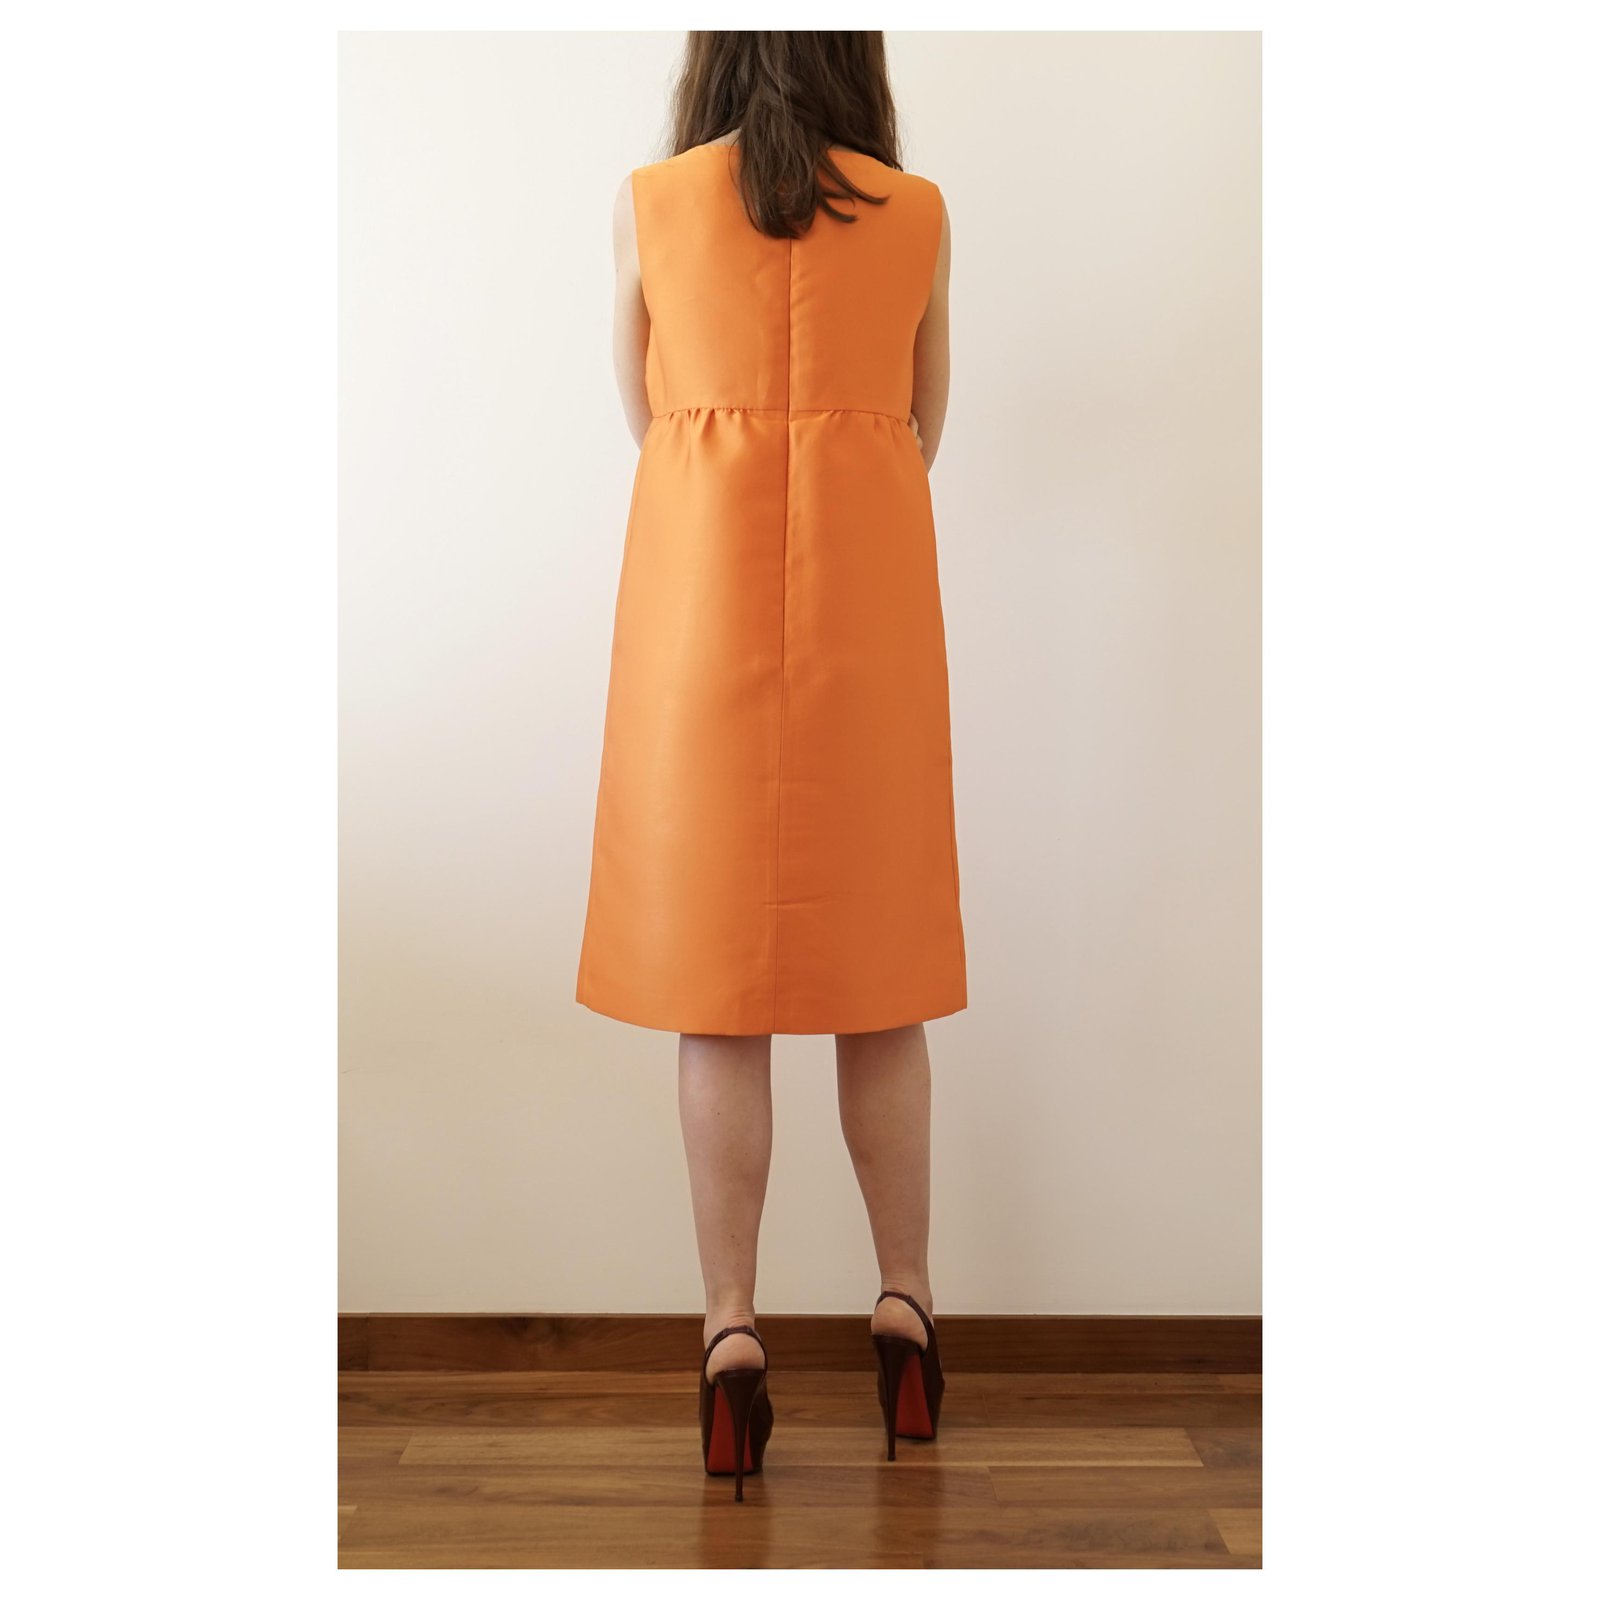 prada orange dress